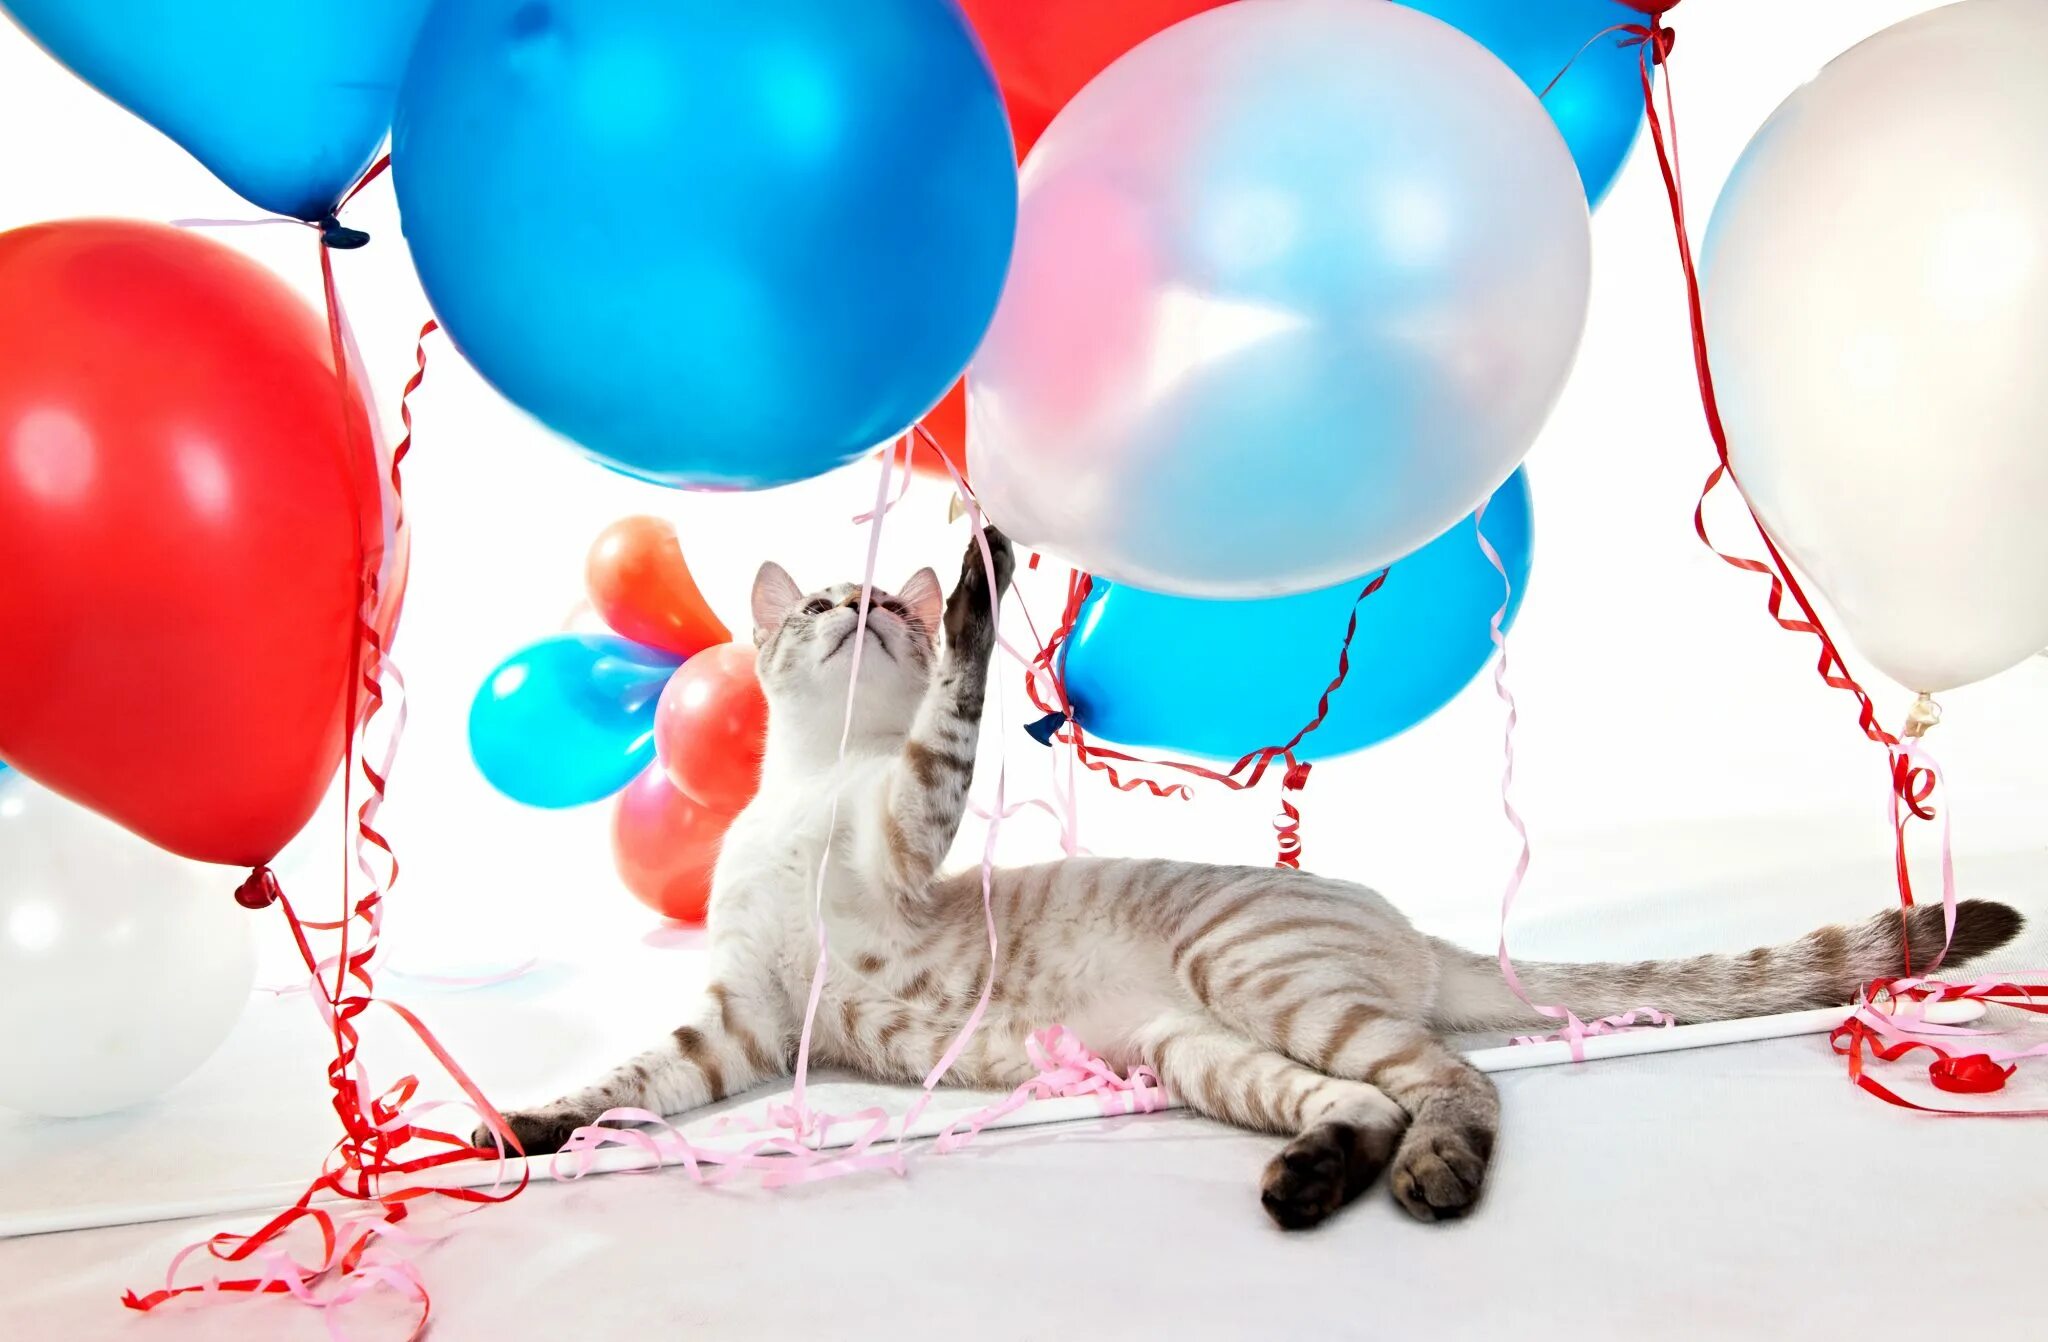 Кошка с воздушными шариками. Кошка с воздушными шарами. Кот на воздушных шариках. Коты шарики. Котик с воздушным шариком.